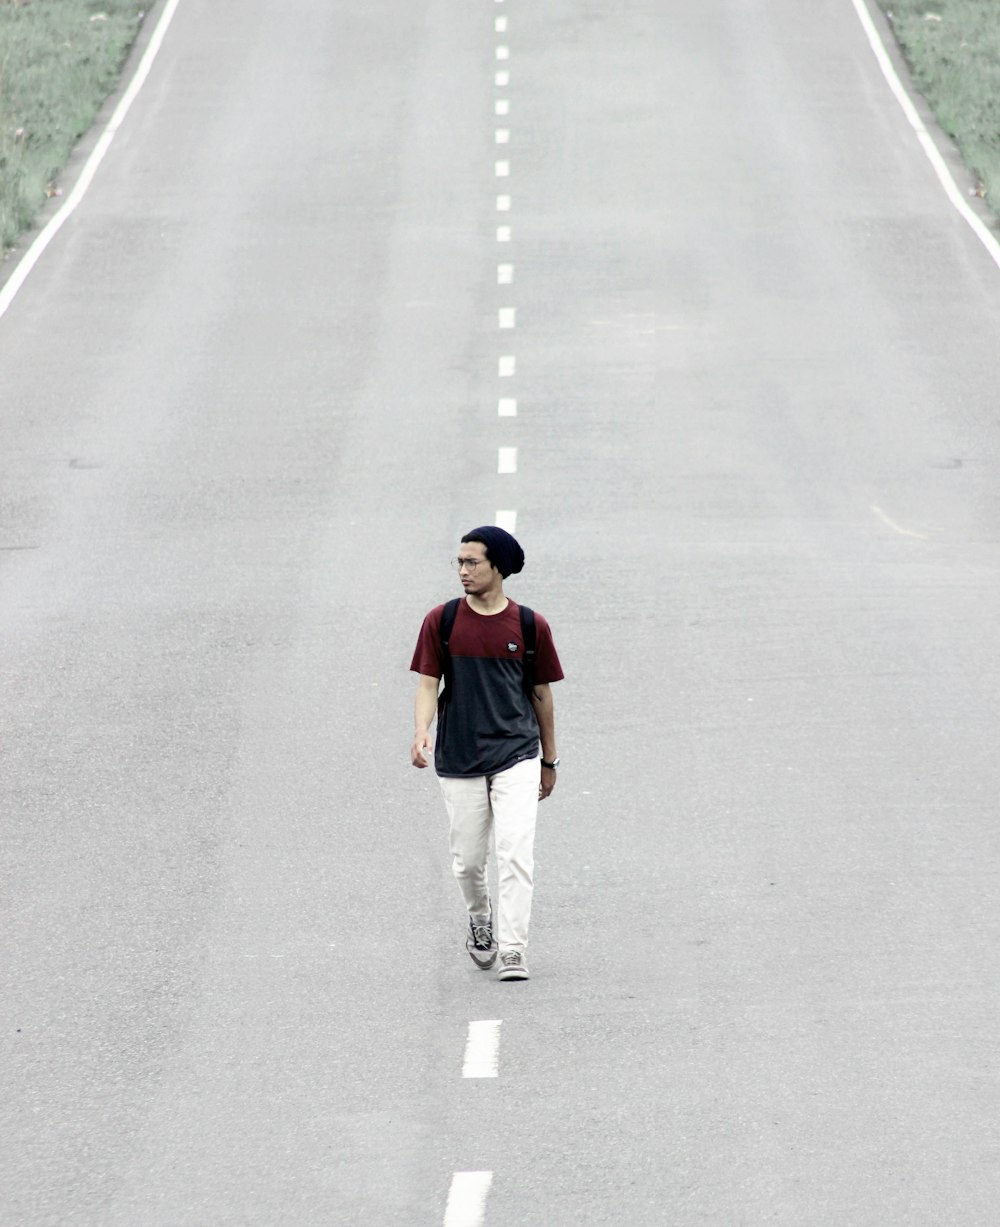 man walking on road at daytime